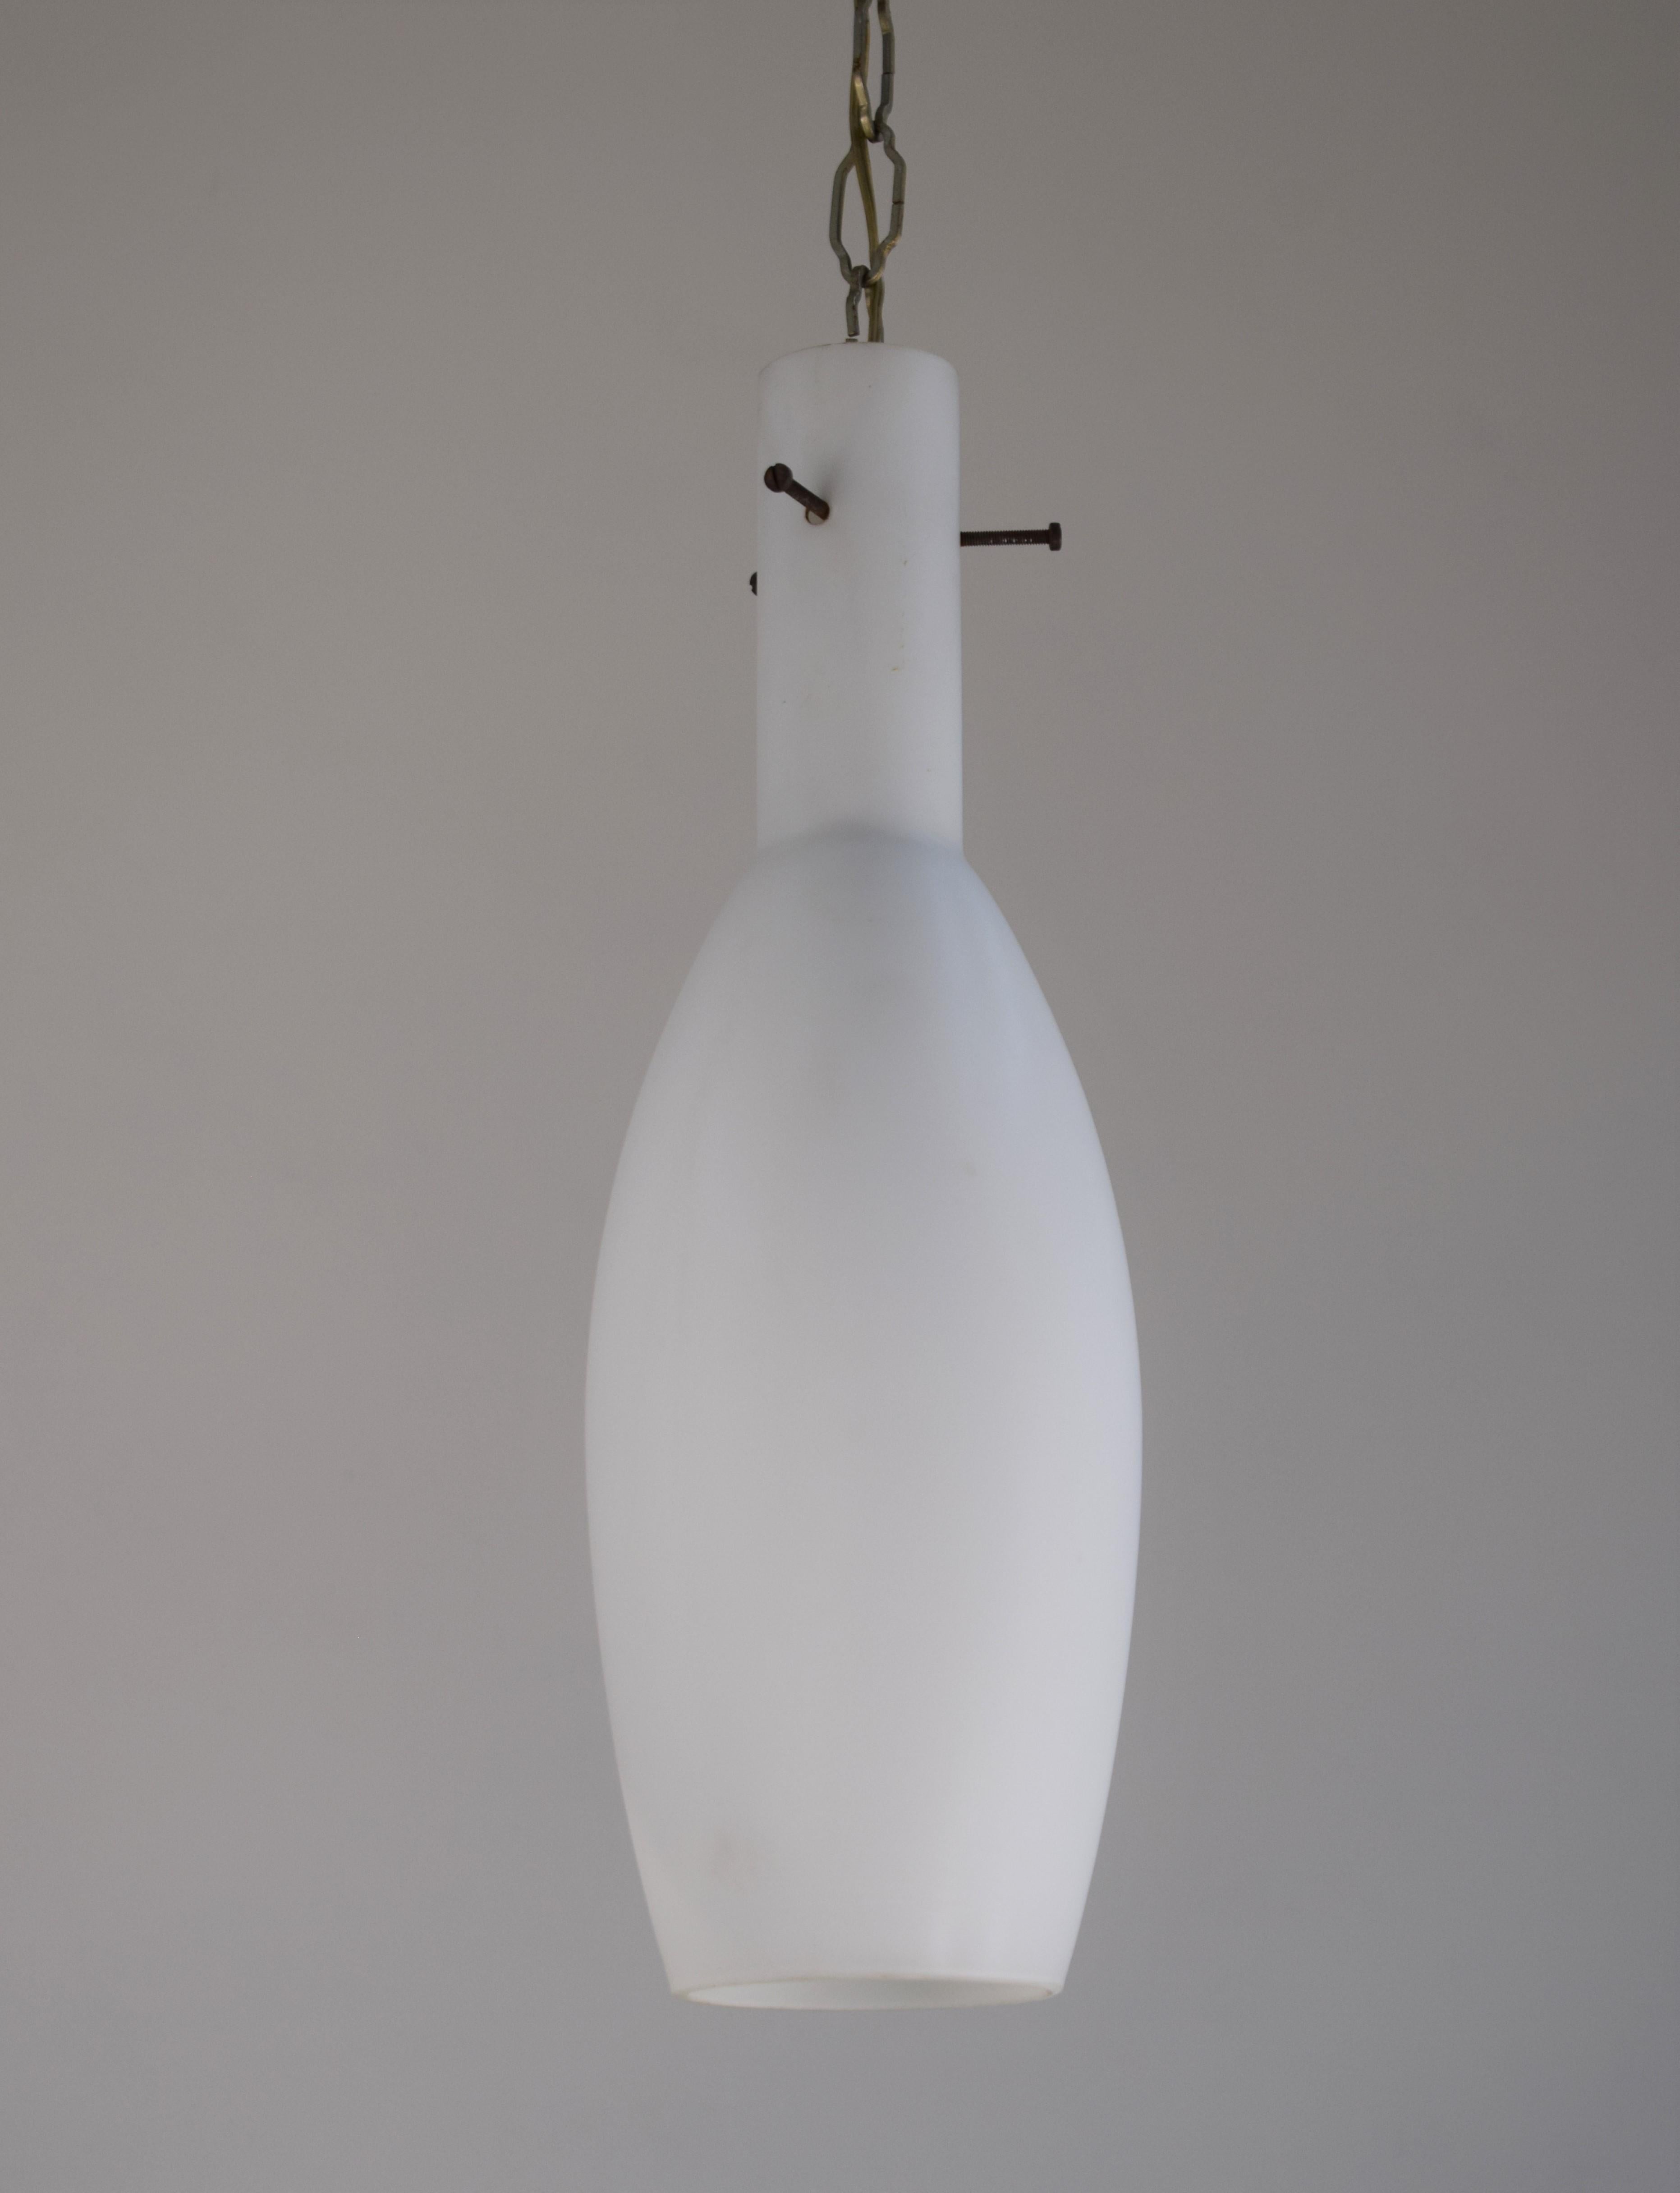 Lampe pendante italienne, verre opalin, années 1960.

Dimensions : H= 81 cm ; P= 12 cm ; H verre= 40cm.